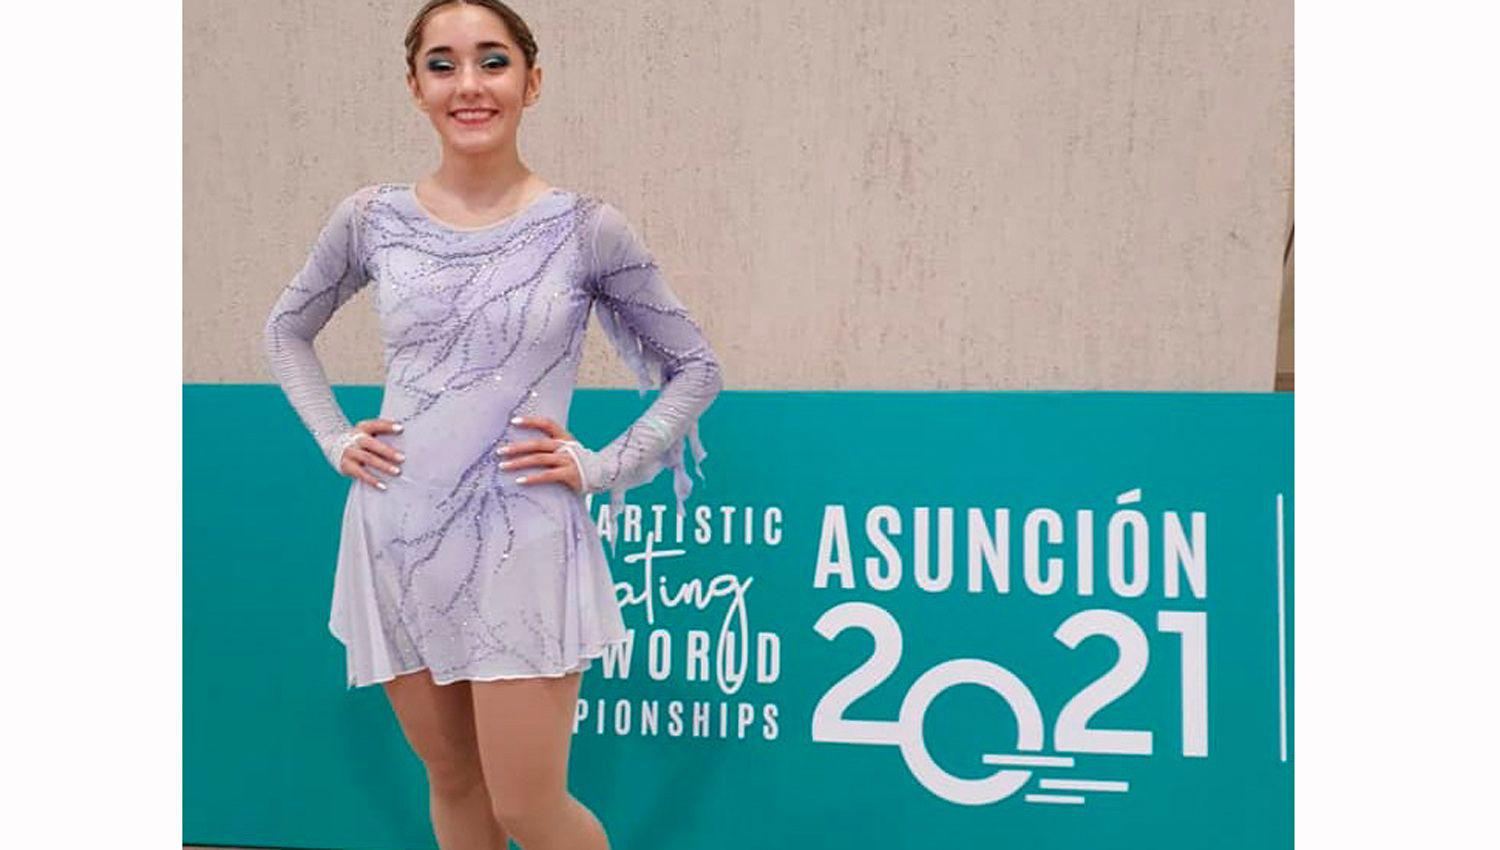 María Lourdes DPaul cumplió una destacada actuación
en el Mundial de partín artístico que se realizó en Asunción Paraguay